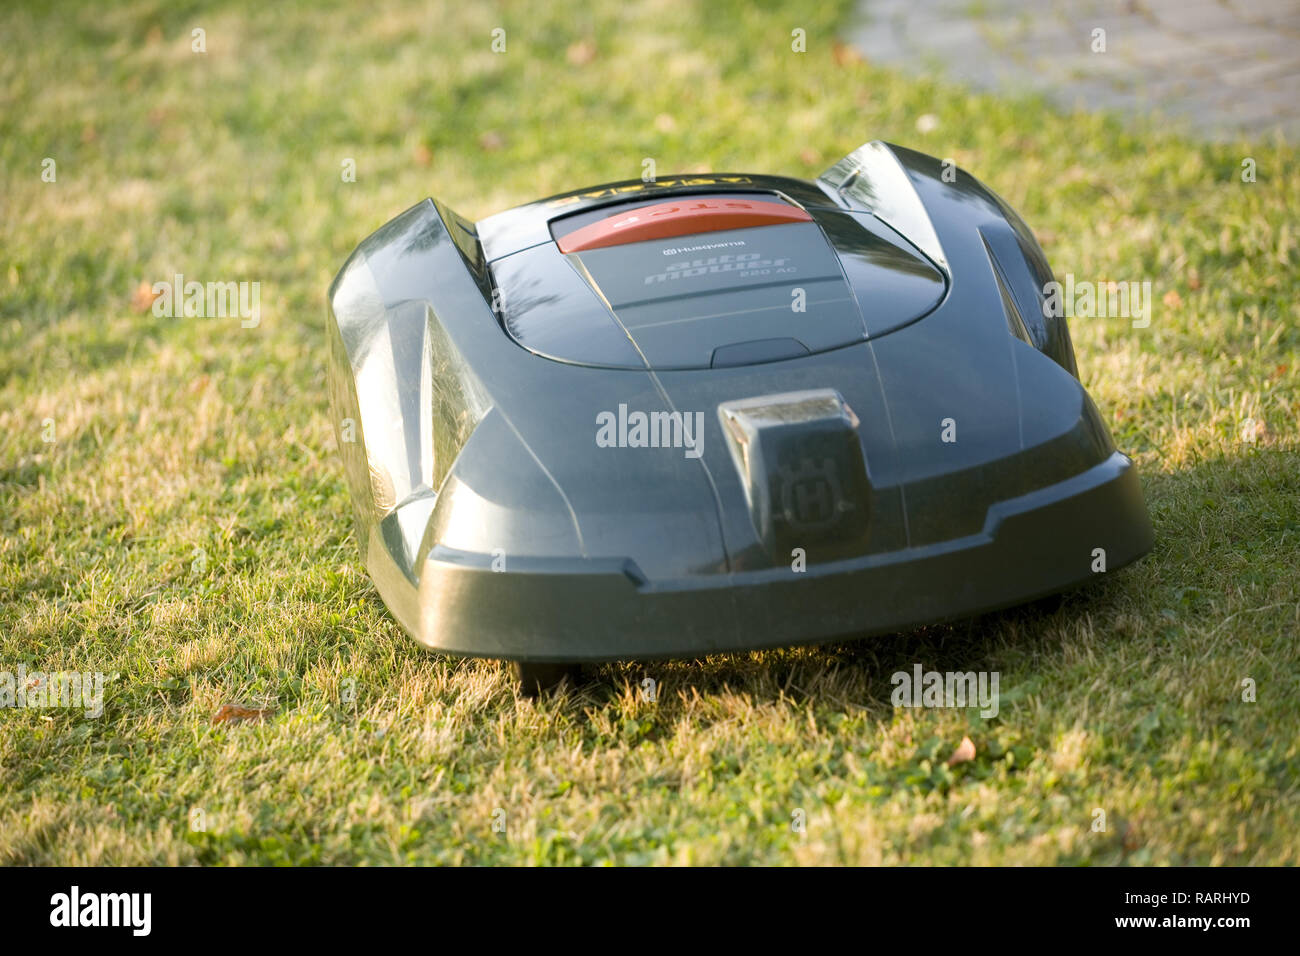 Tondeuse robot automatique coupé de l'herbe près de tête à l'appareil photo Banque D'Images